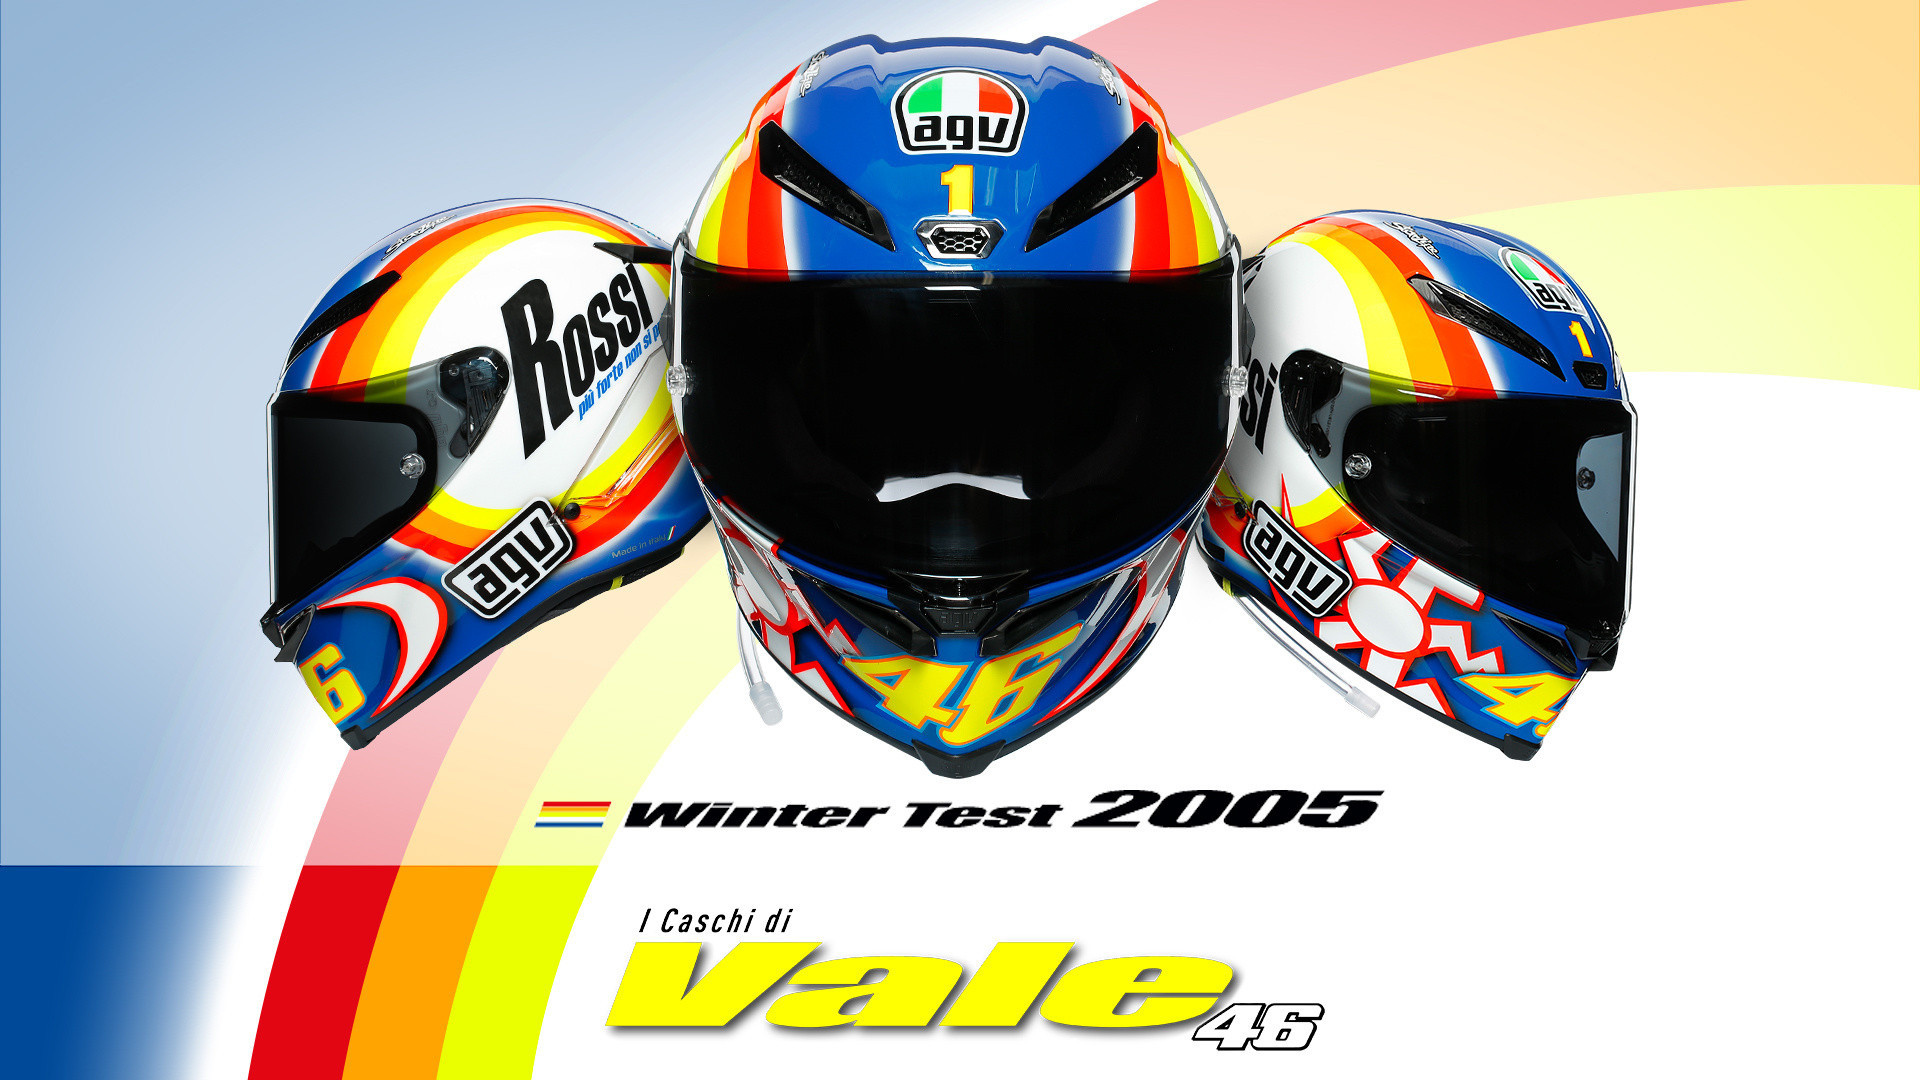 Pista GP RR casco medio-grande Agv 216031D9MY00608 Rossi Invierno Test 2005 